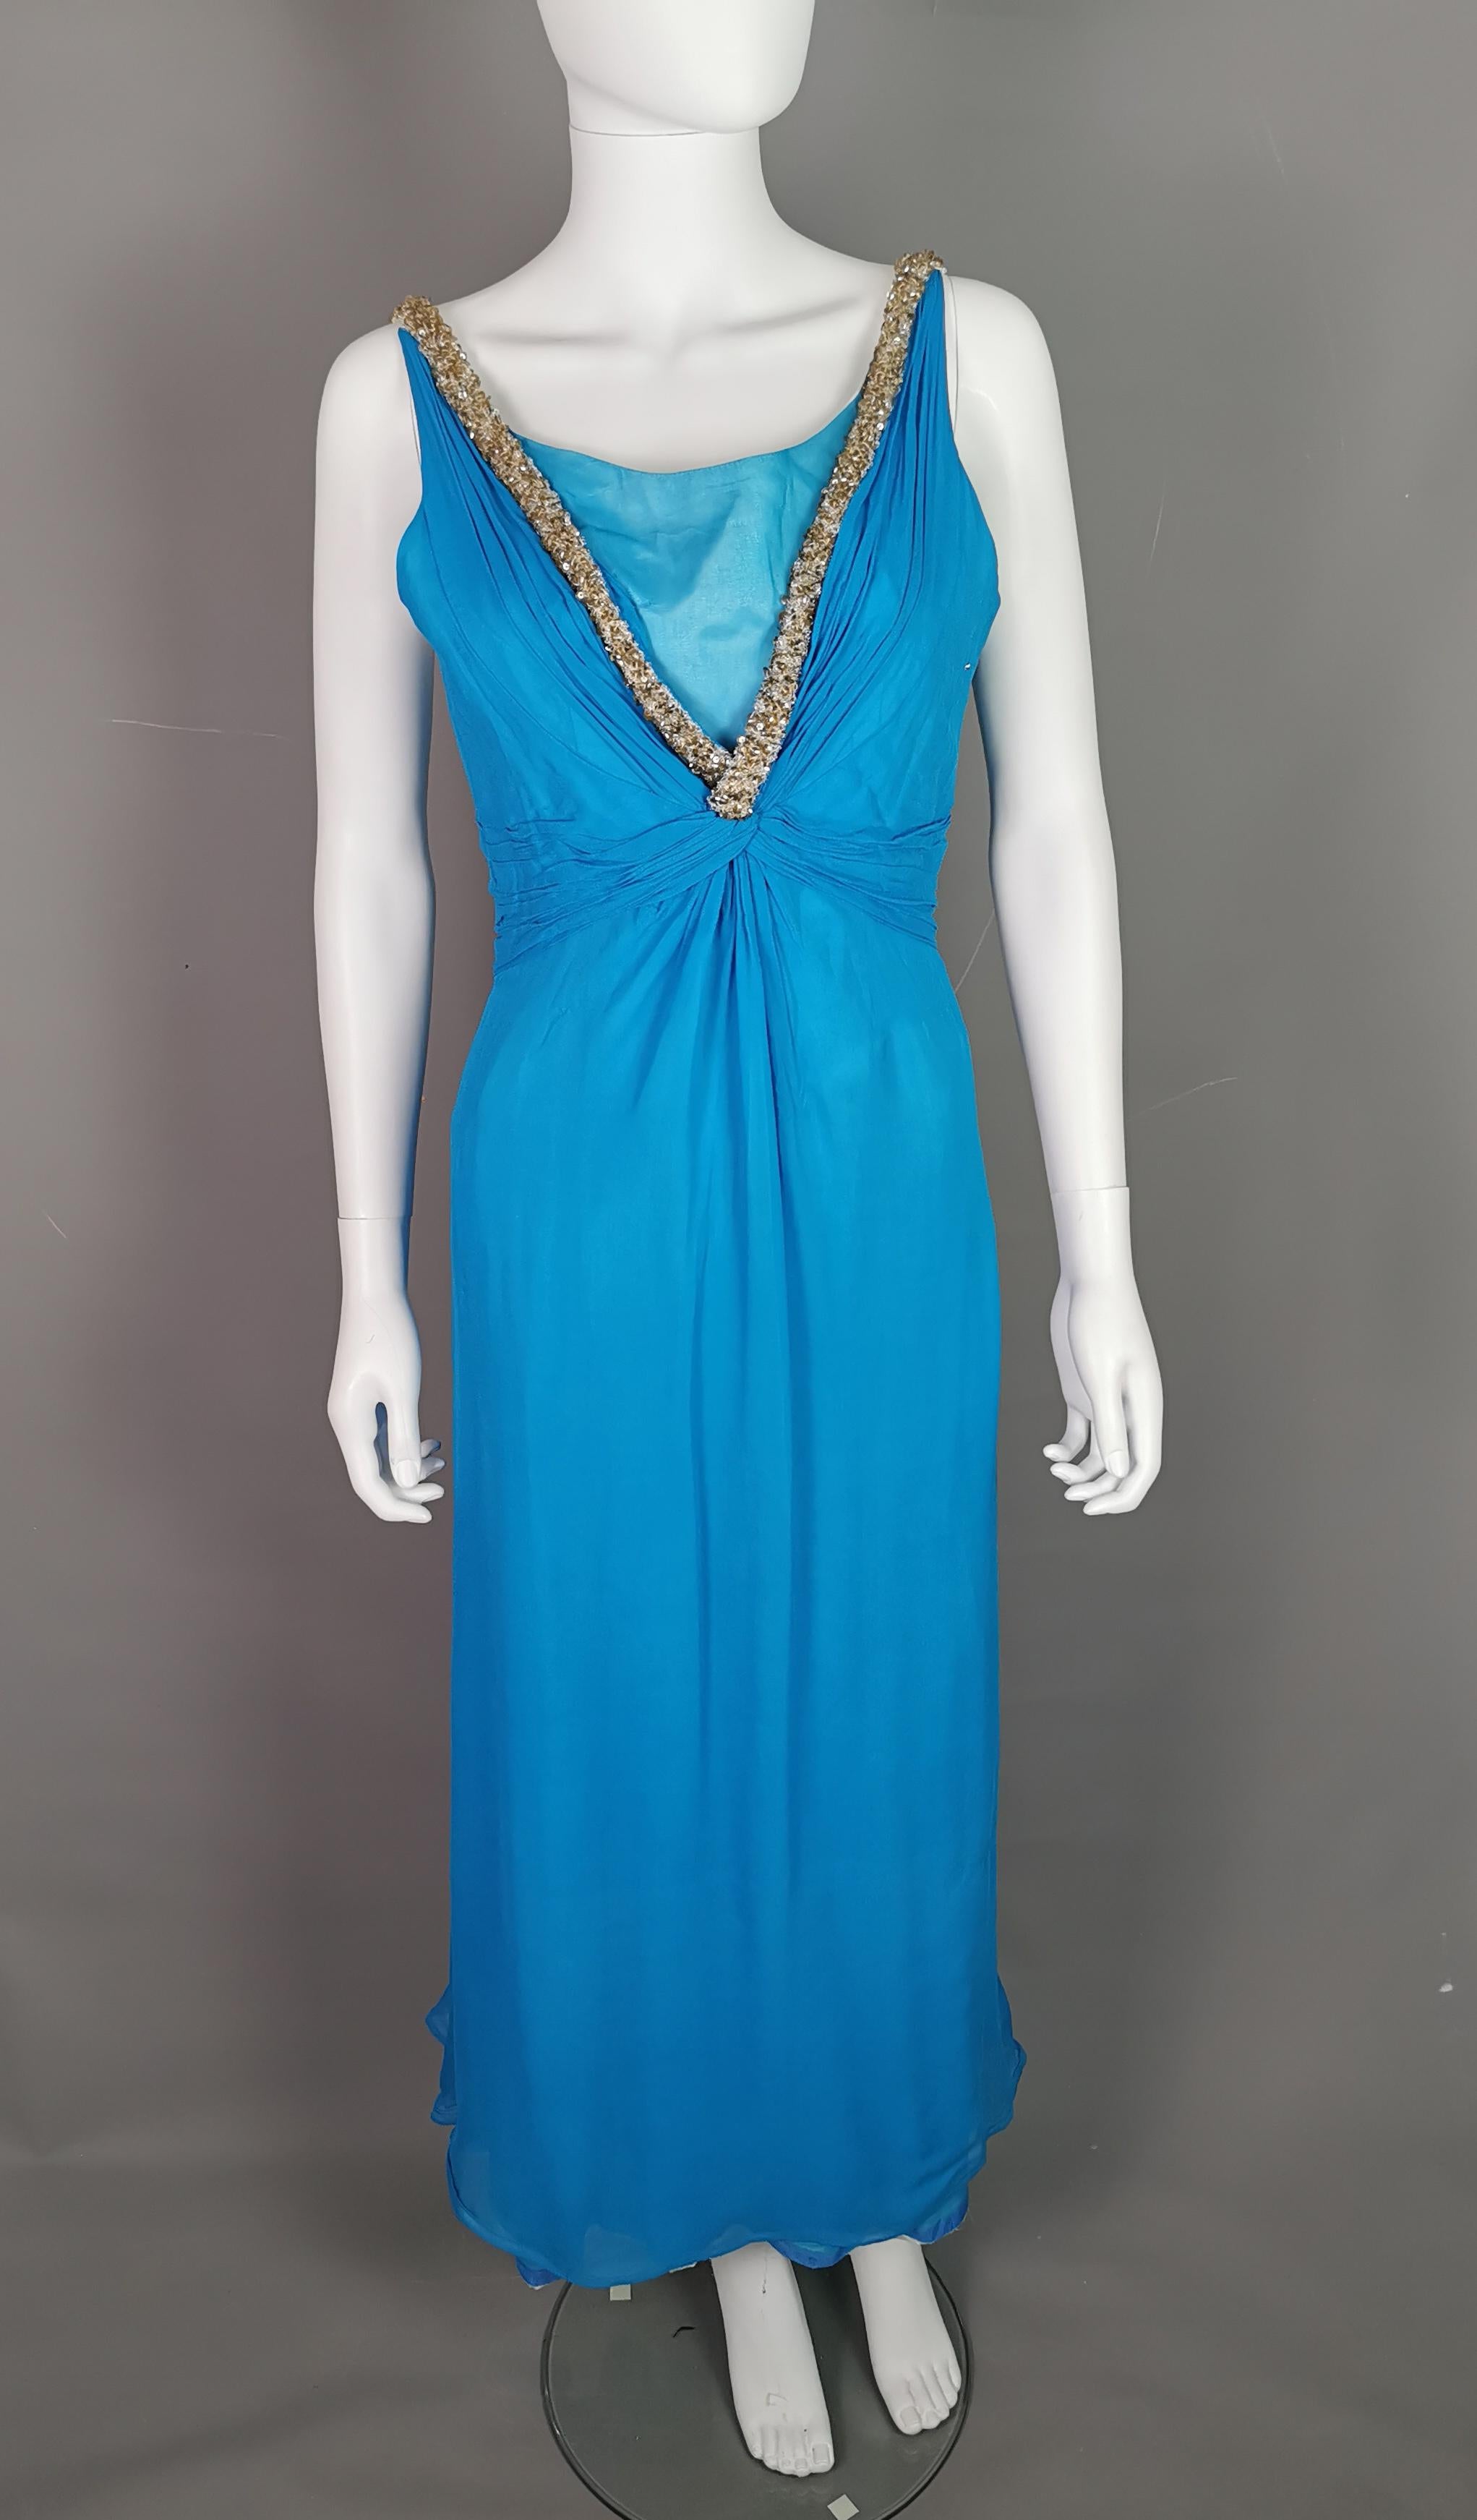 Magnifique robe de soirée vintage des années 1970, signée Emma Domb.

Cette robe a une allure de princesse, elle est longue et en mousseline de soie bleu vif. Superposition et panneau de courtoisie à l'encolure en V.

Les bretelles et l'encolure